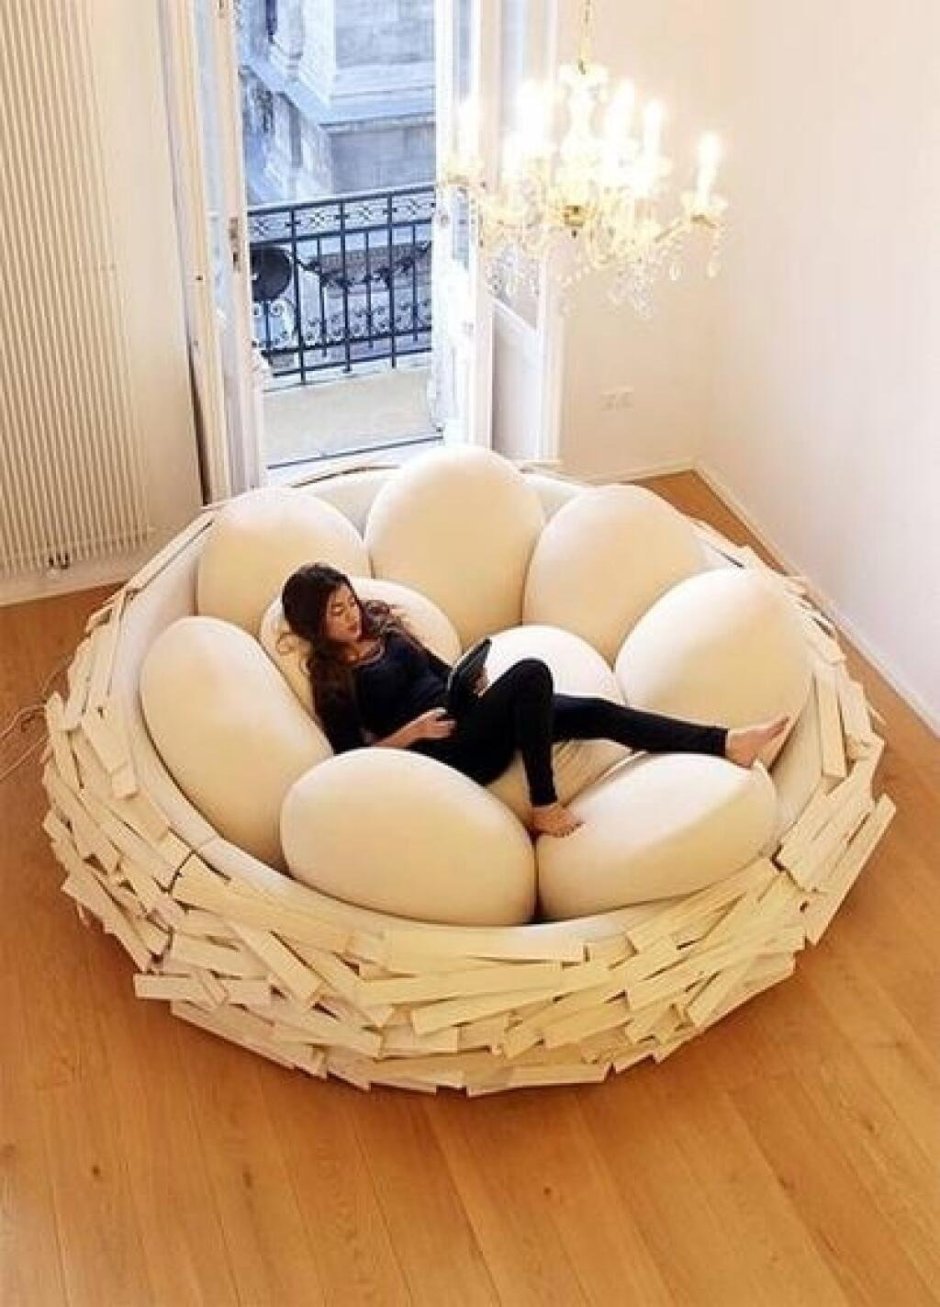 Egg nest bed